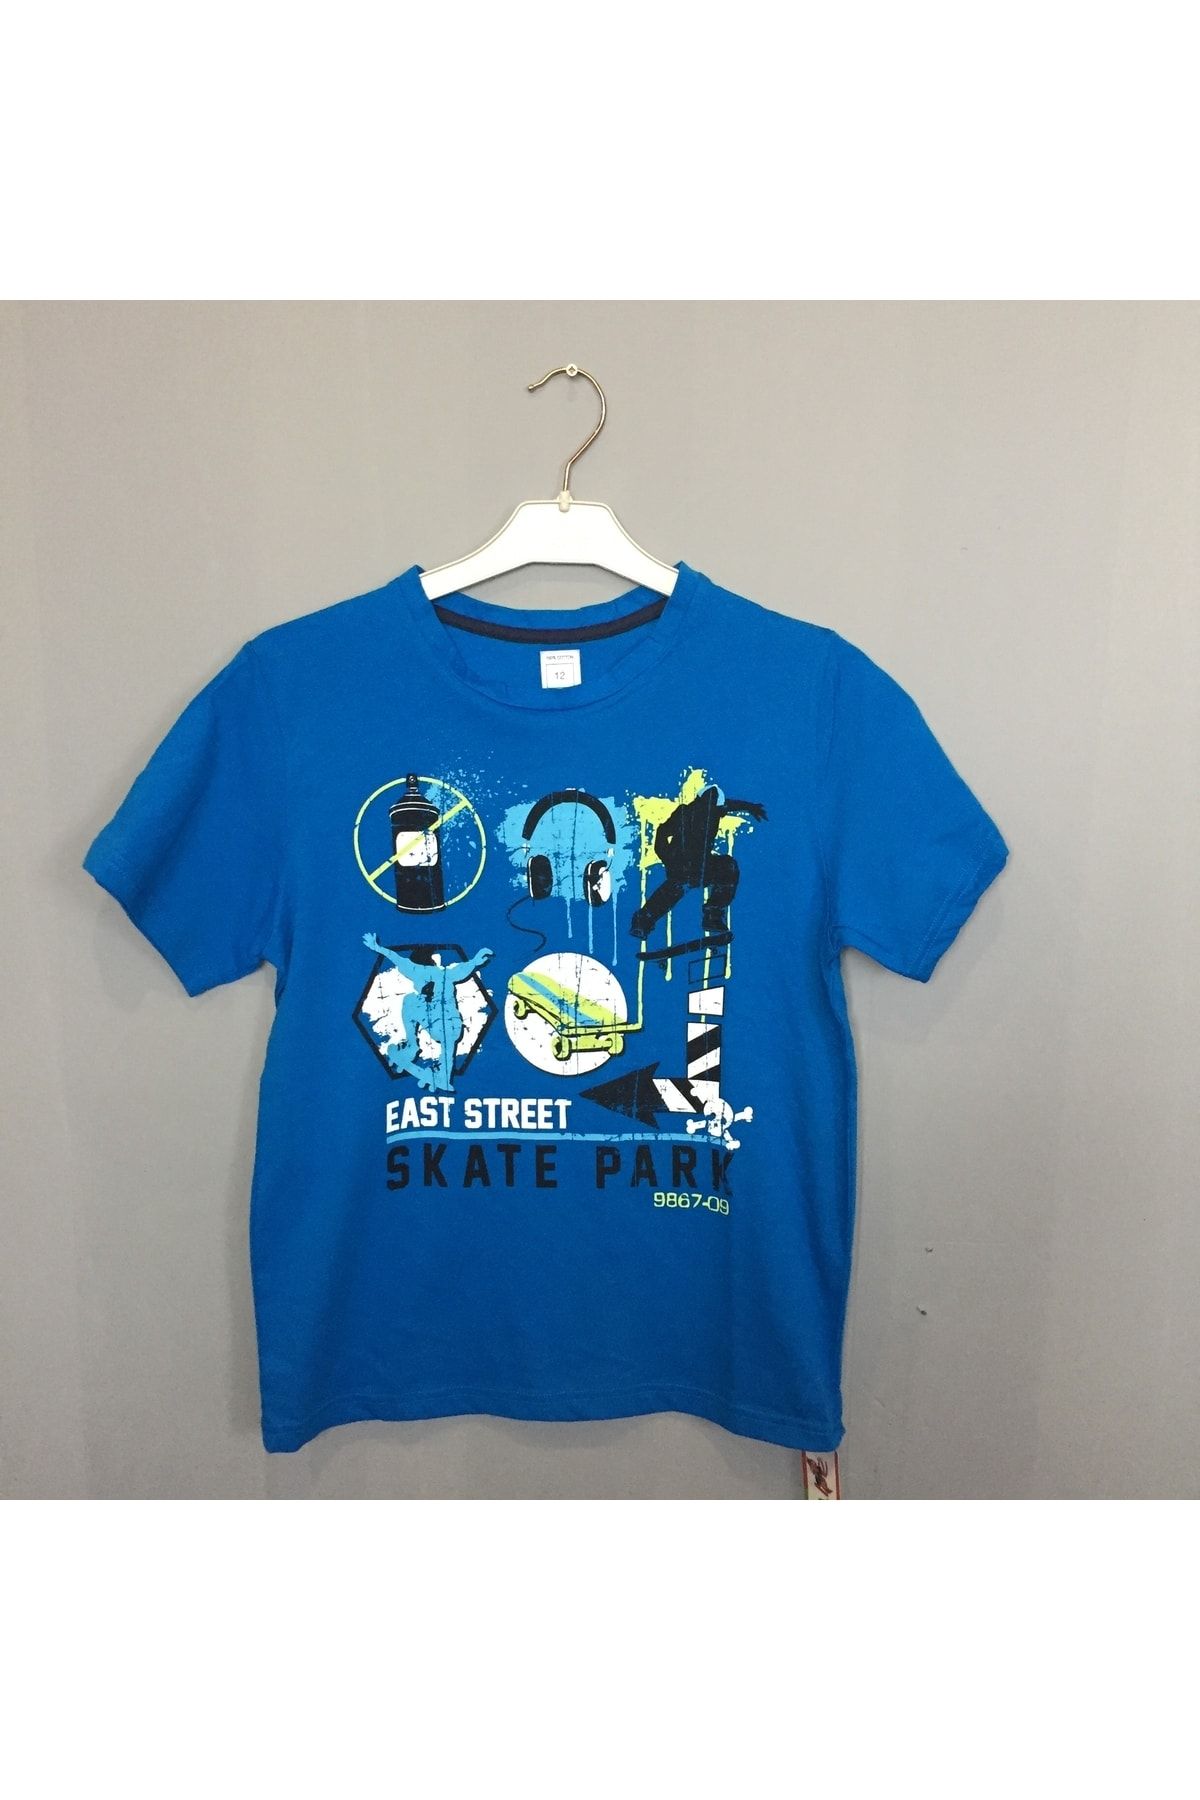 Miniworld Skate Park T-shirt